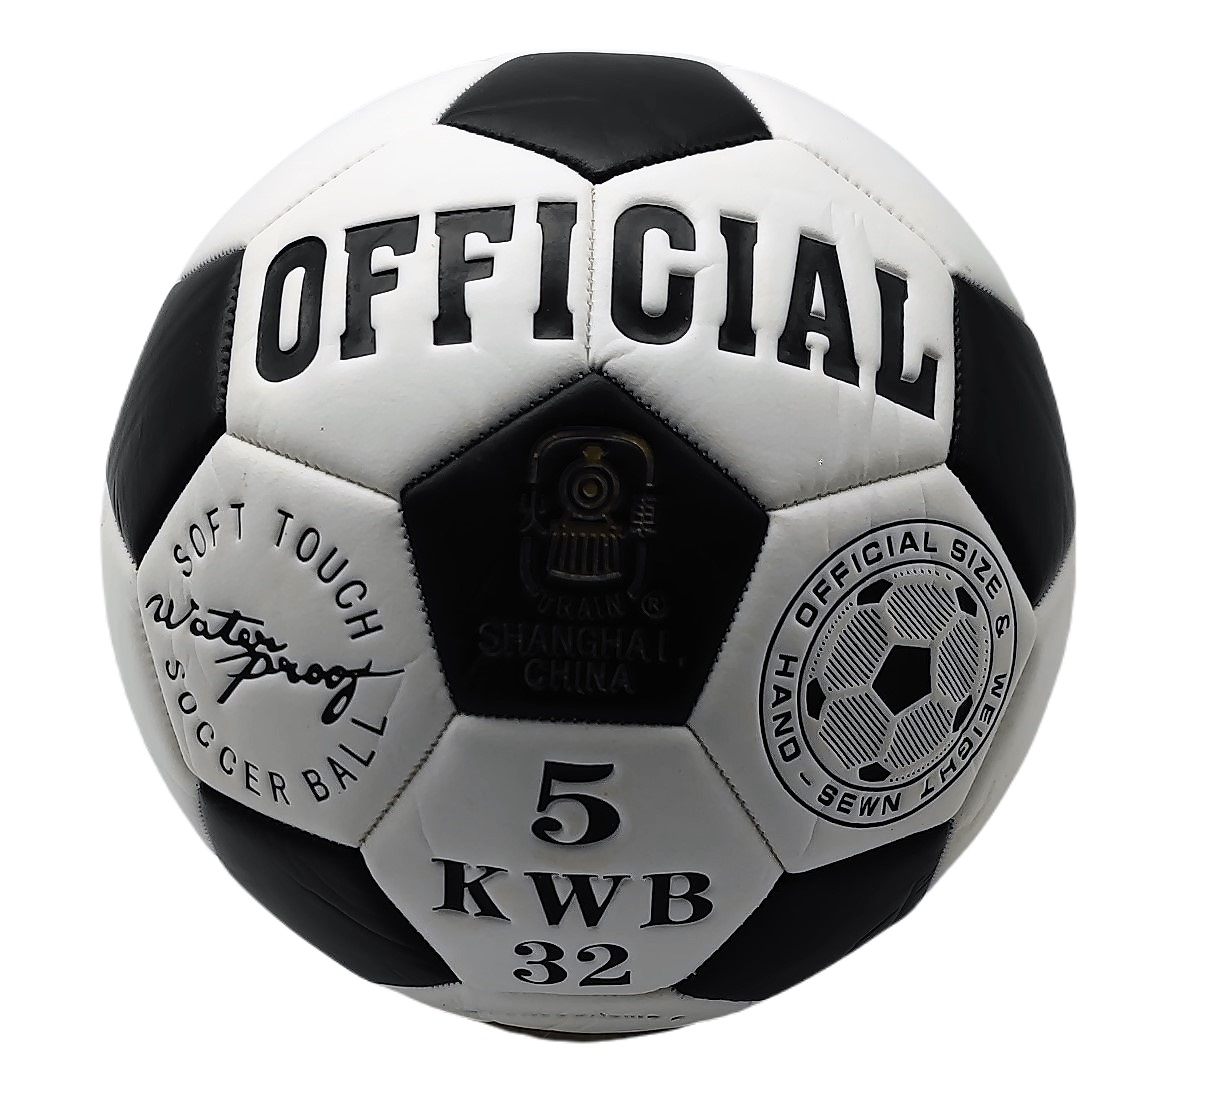 Мяч футбольный классический Official 390 гр, 3 слоя